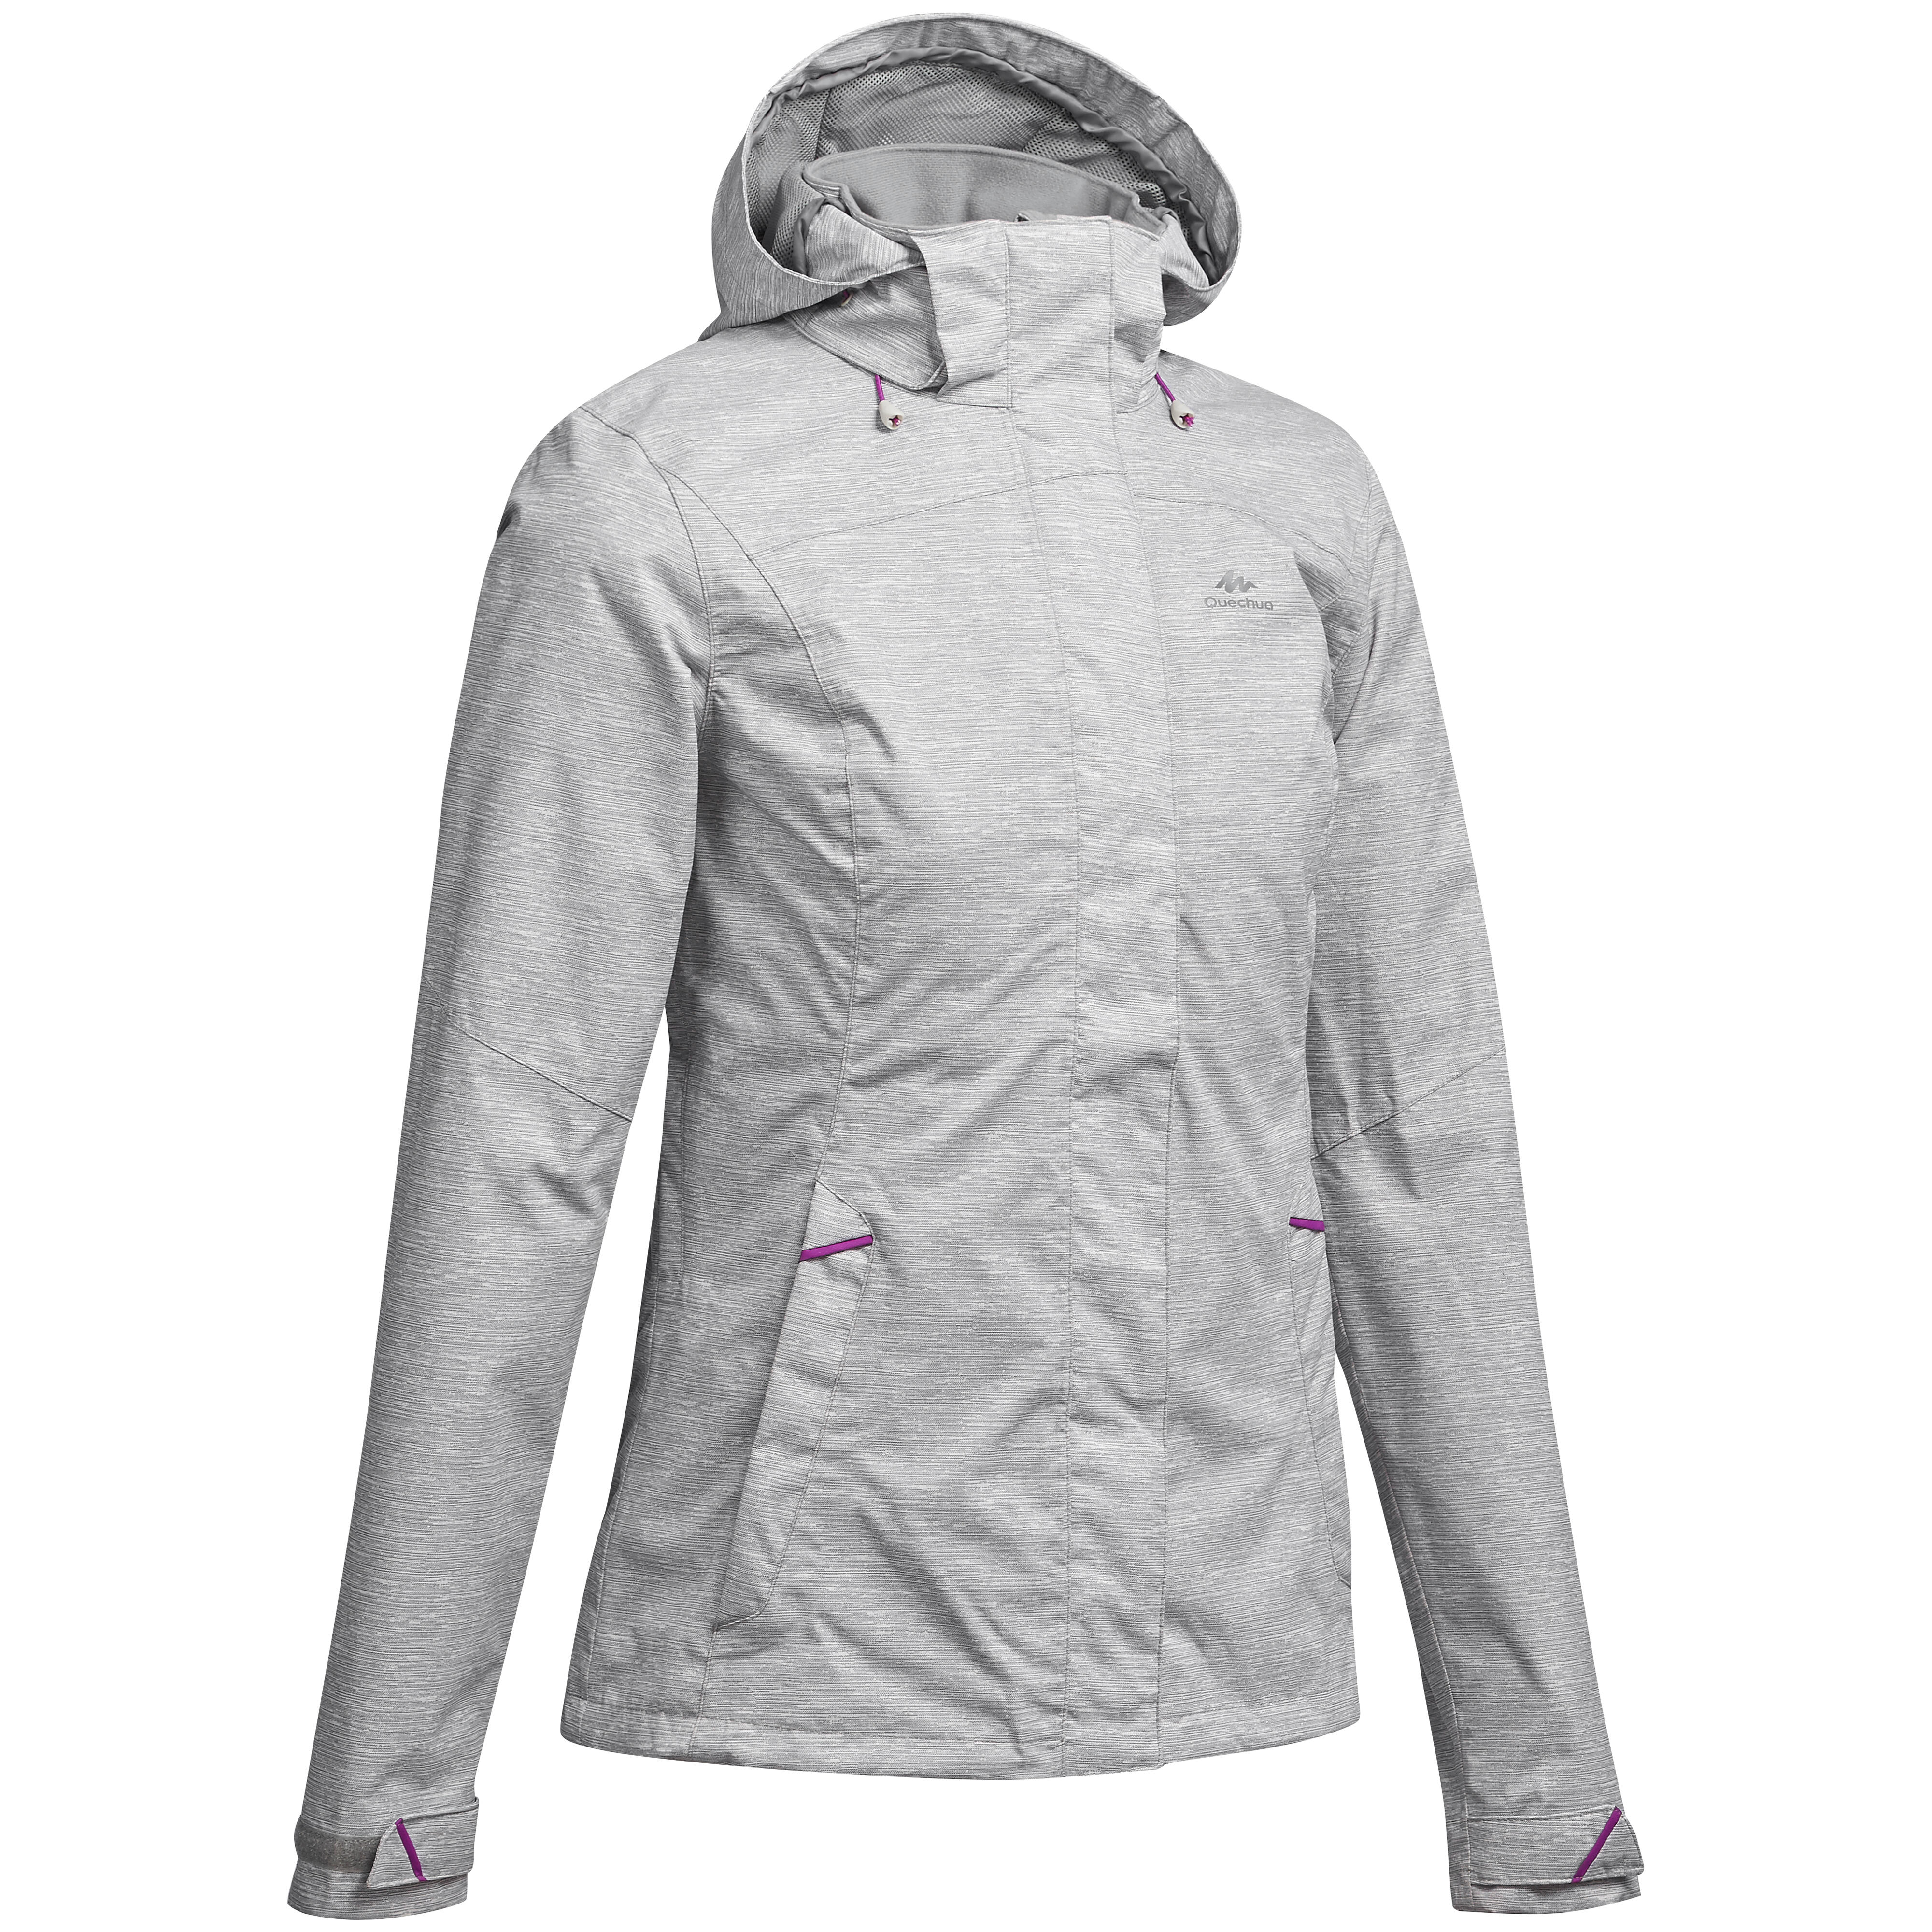 quechua jacket waterproof